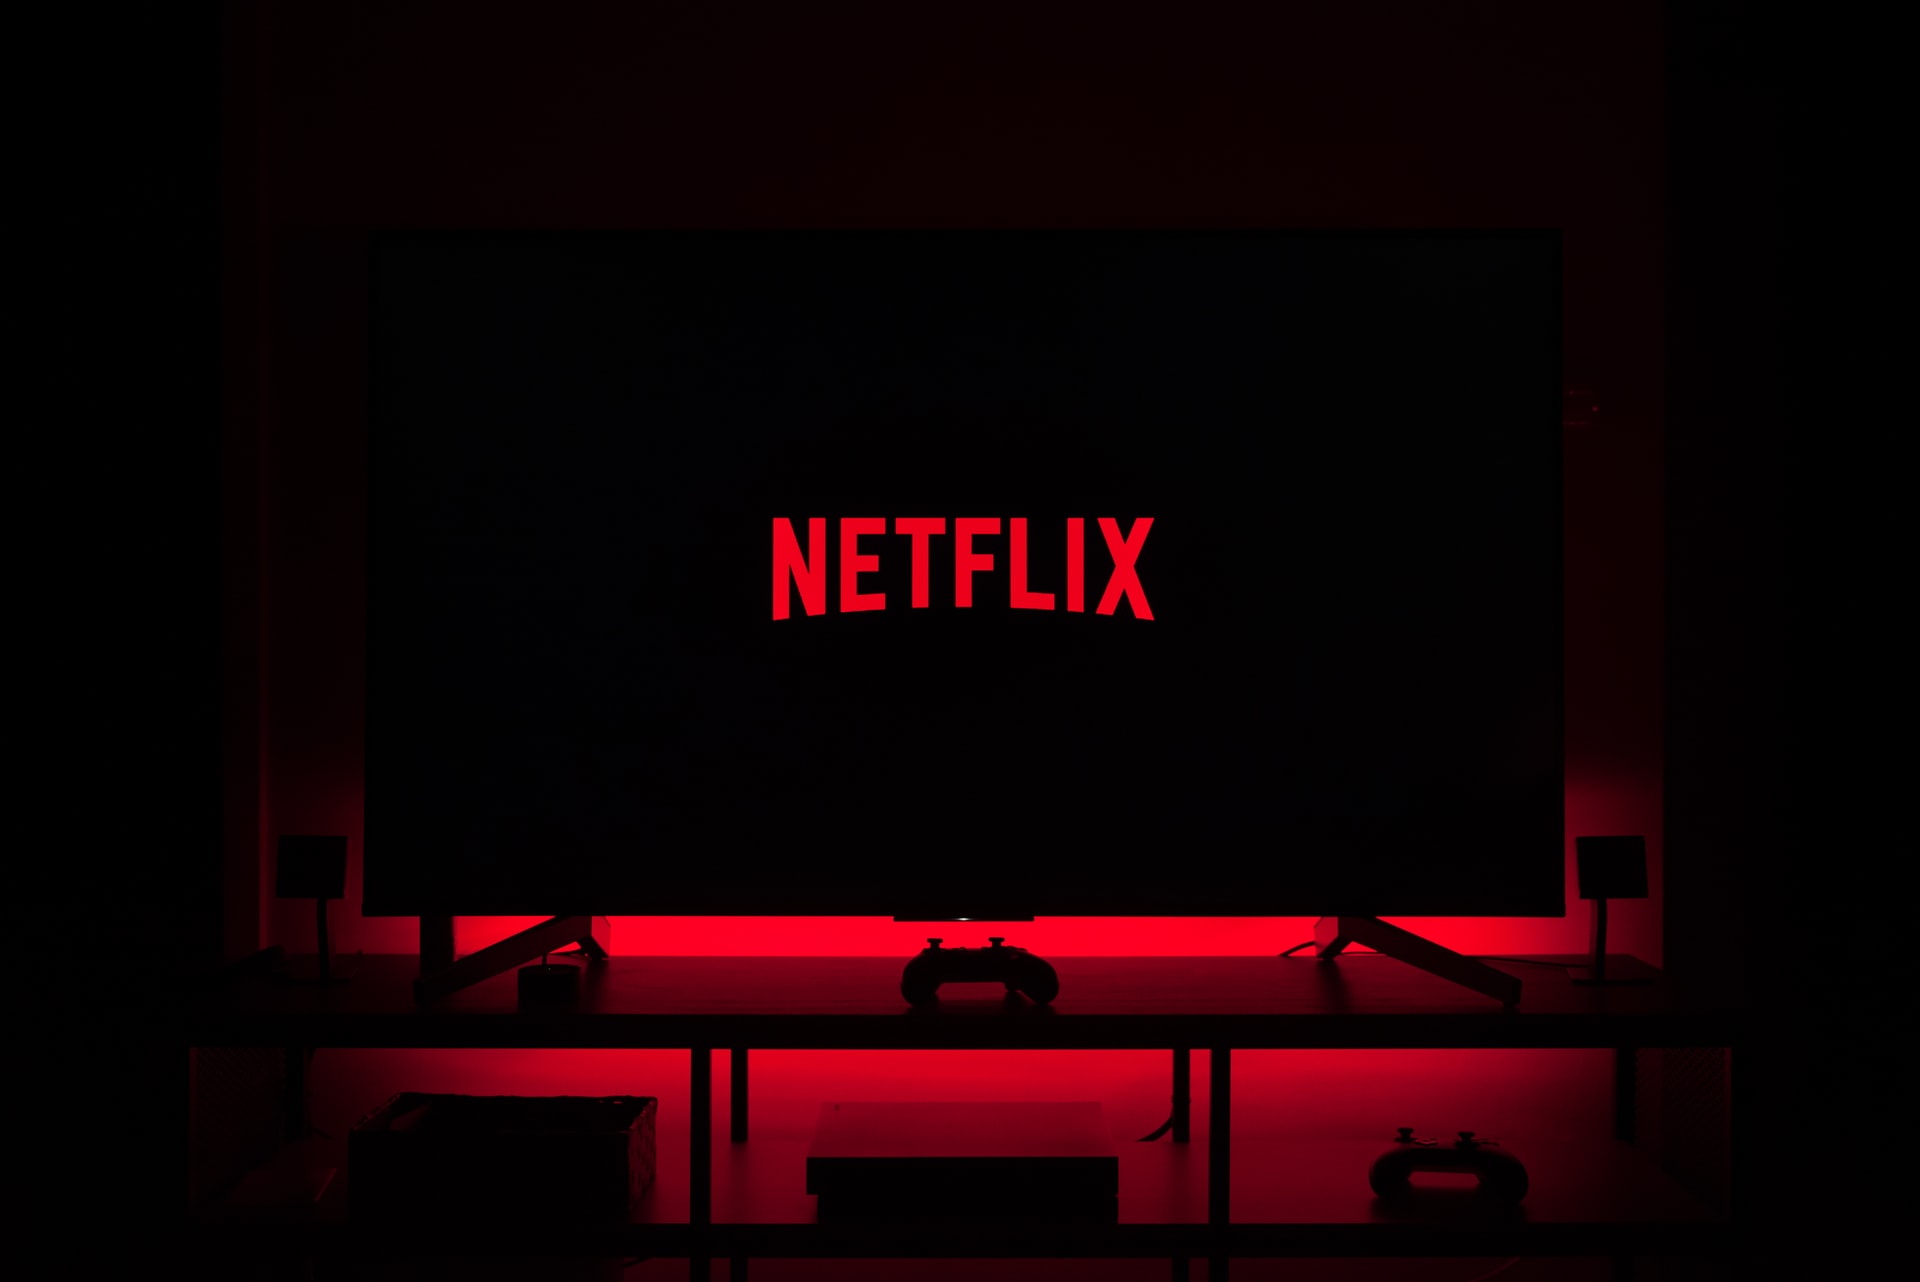 Netflix hat die Rechte zur Ausstrahlung von sieben ukrainischen Filmen erworben: Was wird gezeigt?